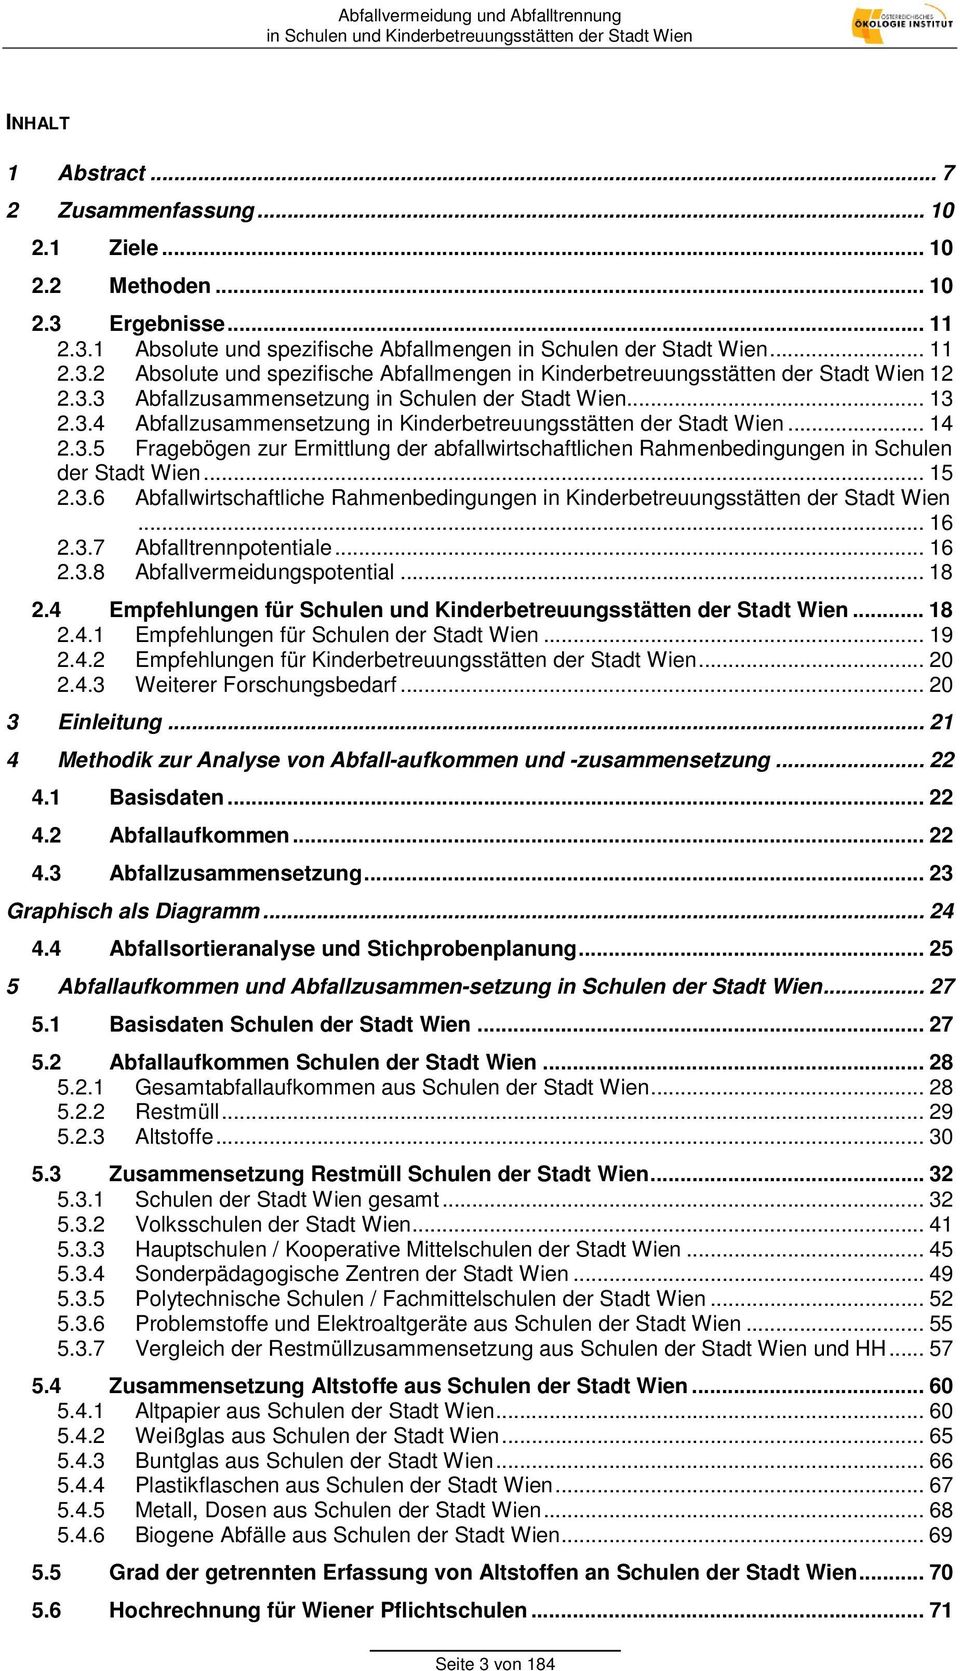 .. 15 2.3.6 Abfallwirtschaftliche Rahmenbedingungen in Kinderbetreuungsstätten der Stadt Wien... 16 2.3.7 Abfalltrennpotentiale... 16 2.3.8 Abfallvermeidungspotential... 18 2.